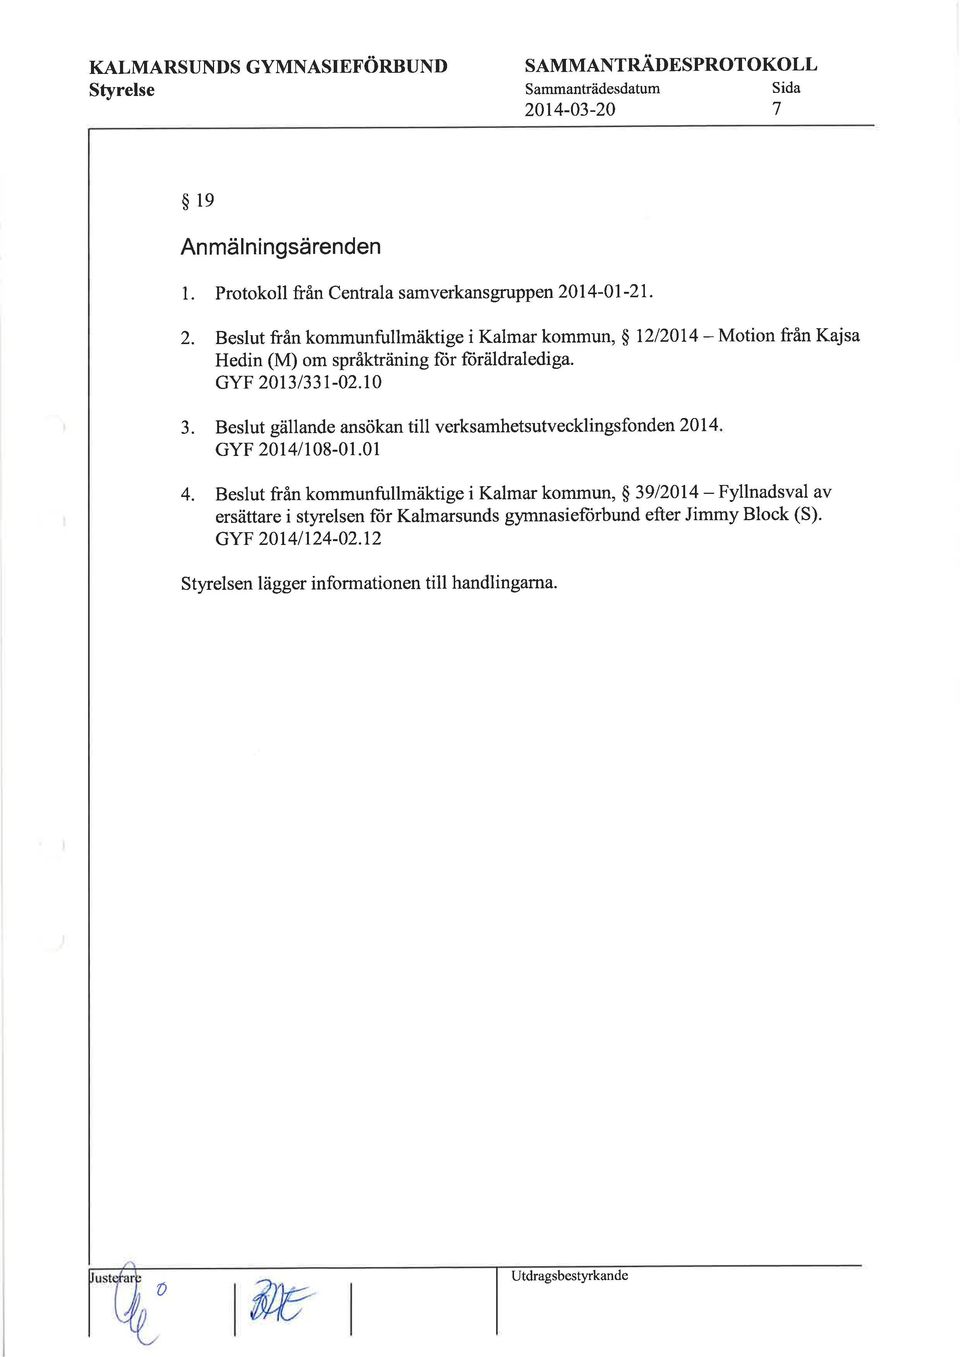 GYF 2013/331-02.10 Motion från Kajsa 3. Beslut gällande ansökan till verksamhetsutvecklingsfonden 2014 GYF 2014l108-01.01 4.